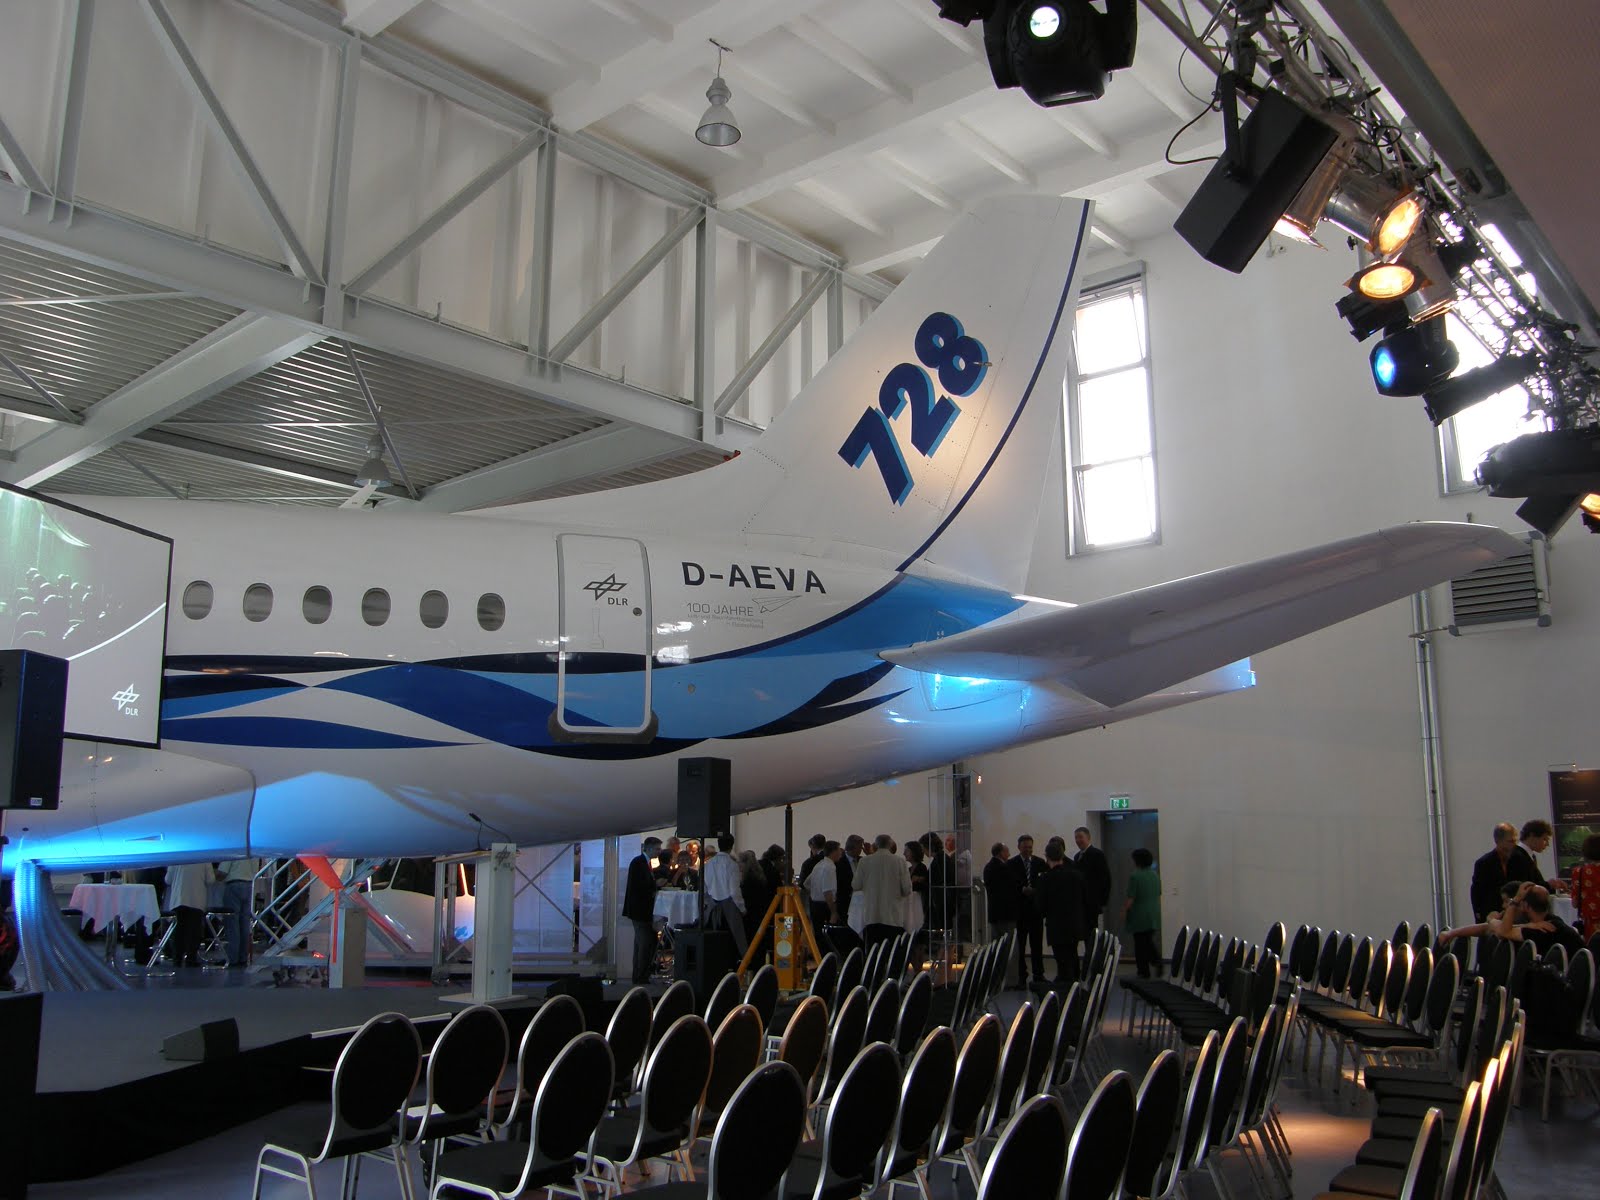 Fairchild Dornier 728 next